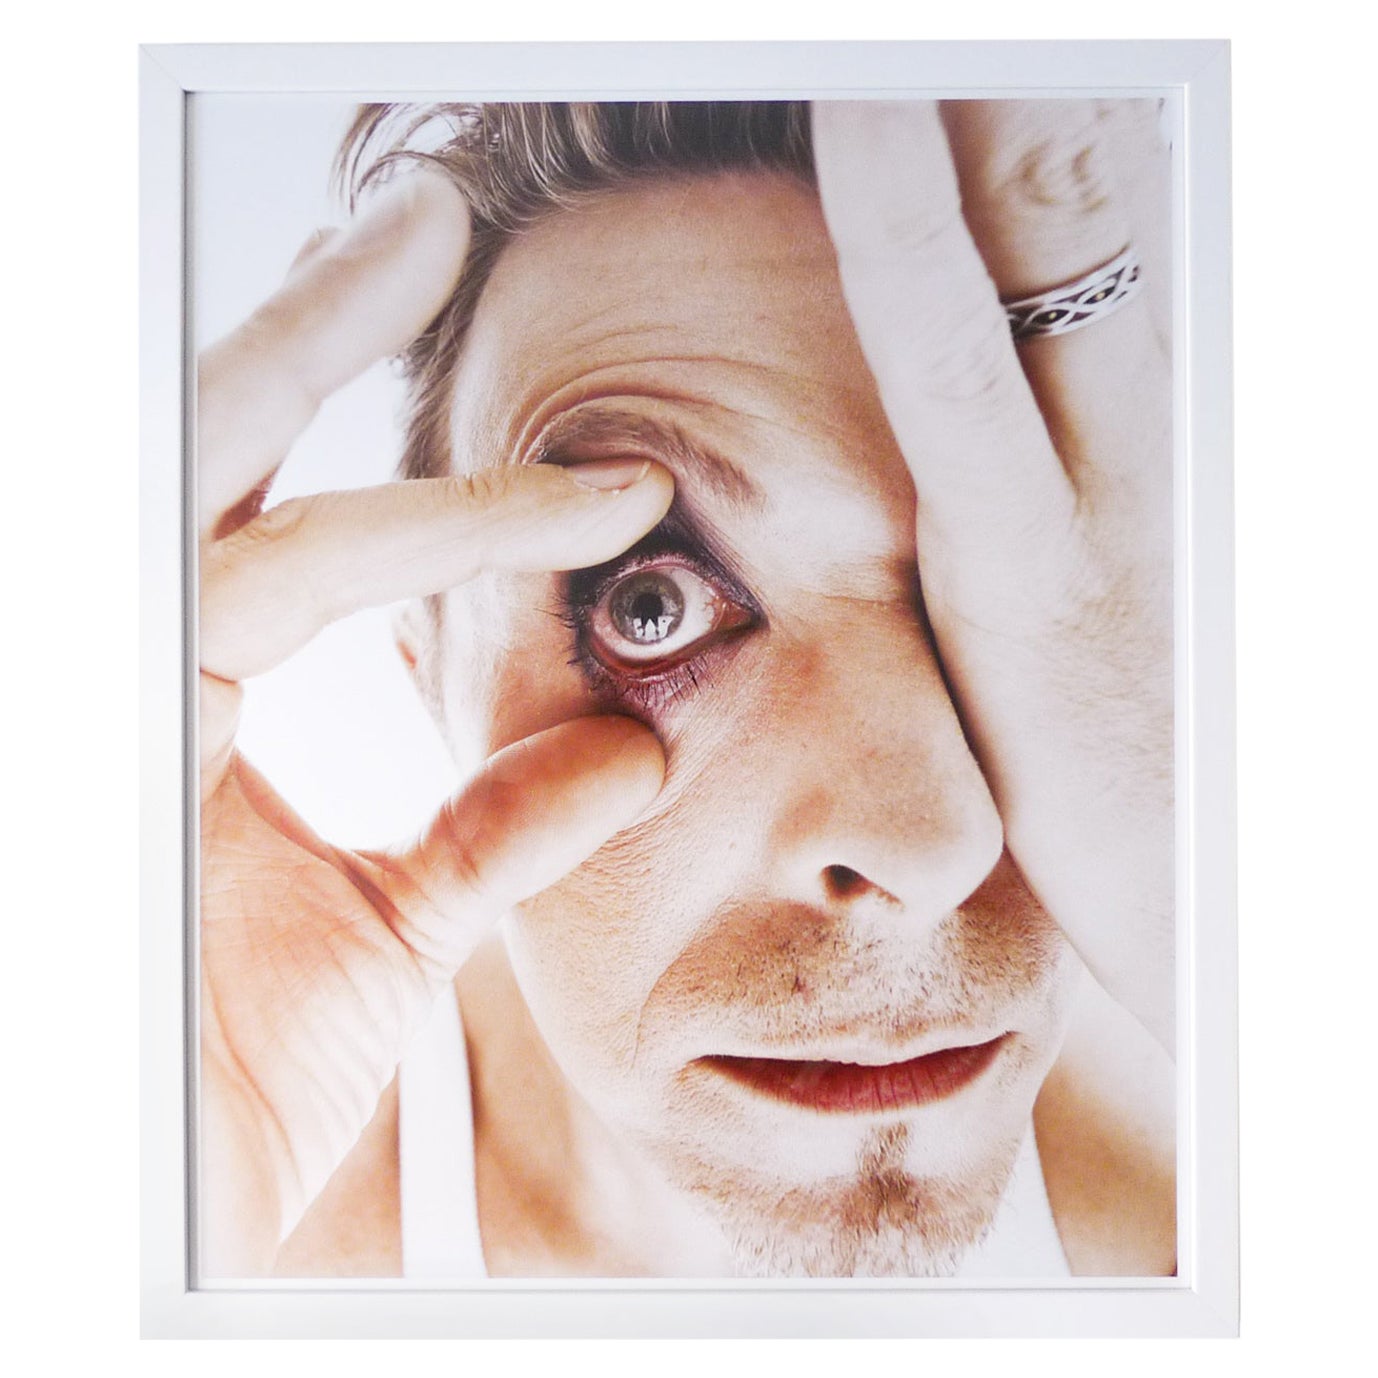 Limitierte Auflage Signiert Bowie's Eye"" Druck von Rankin, Dazed & Confused 1995